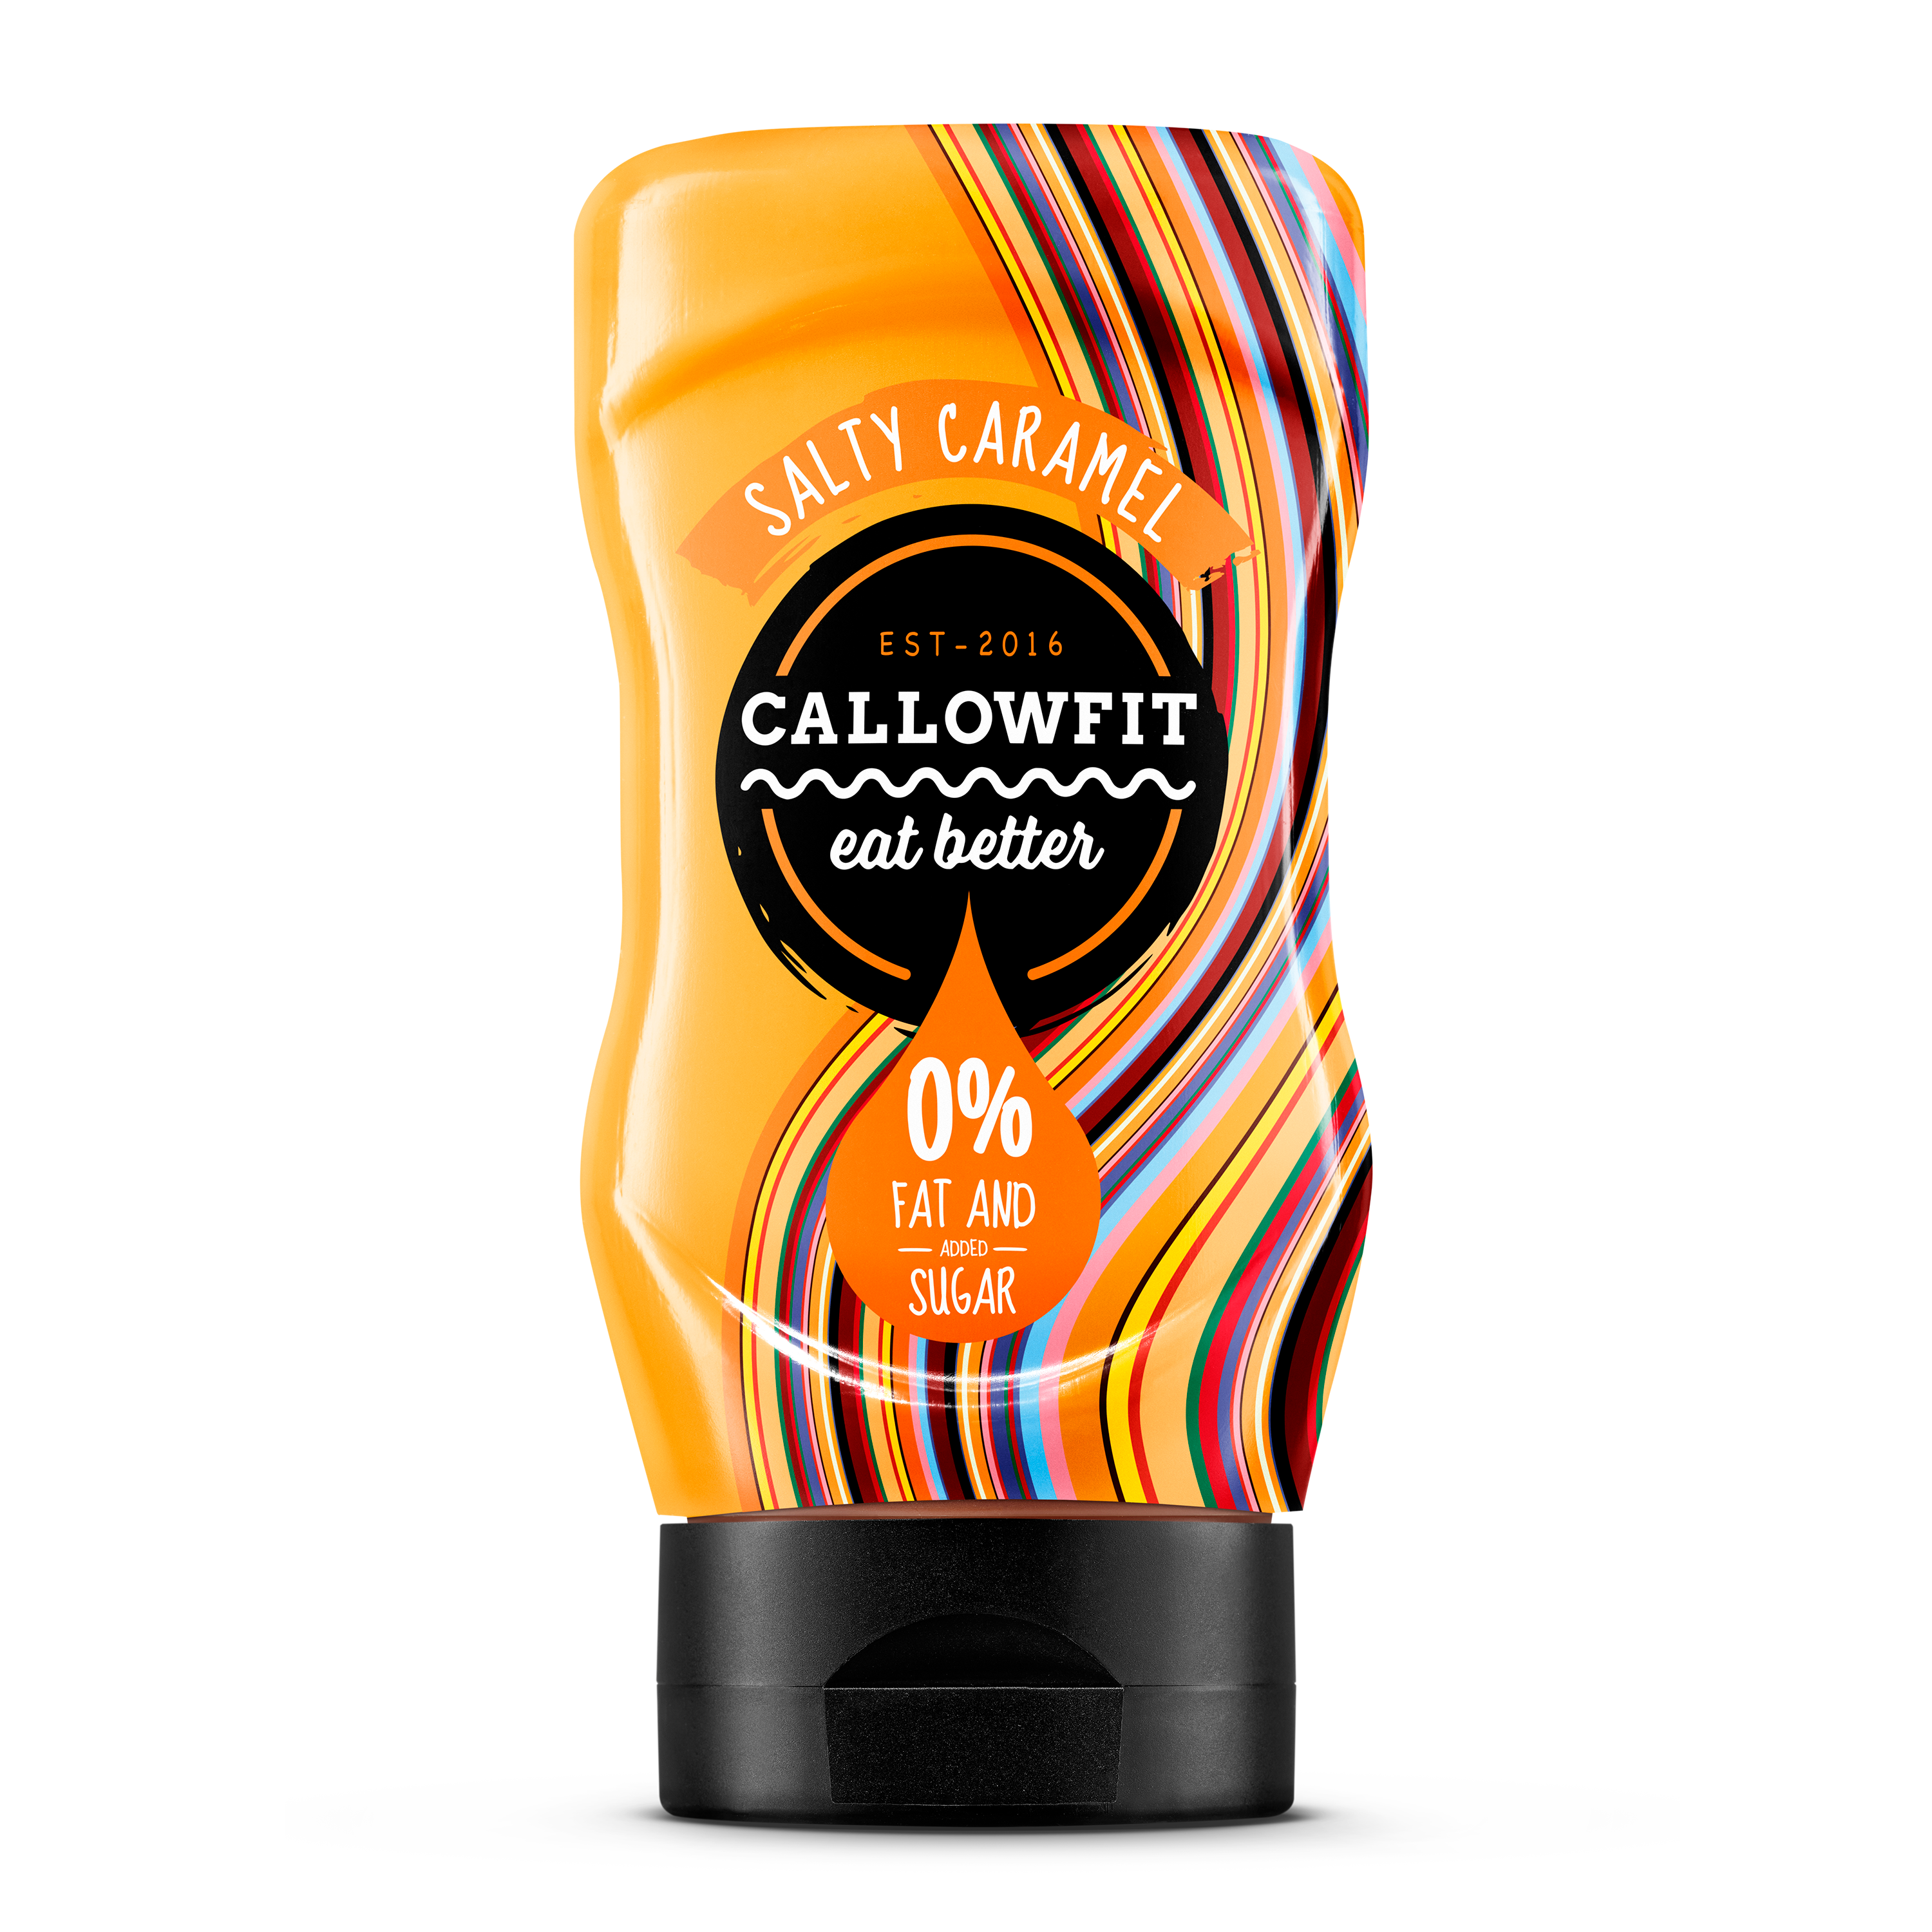 CALLOWFIT Sauce im Geschmack Salty Caramel mit 0% Fett und Zucker in einer Tube mit bunten Aufdruck.